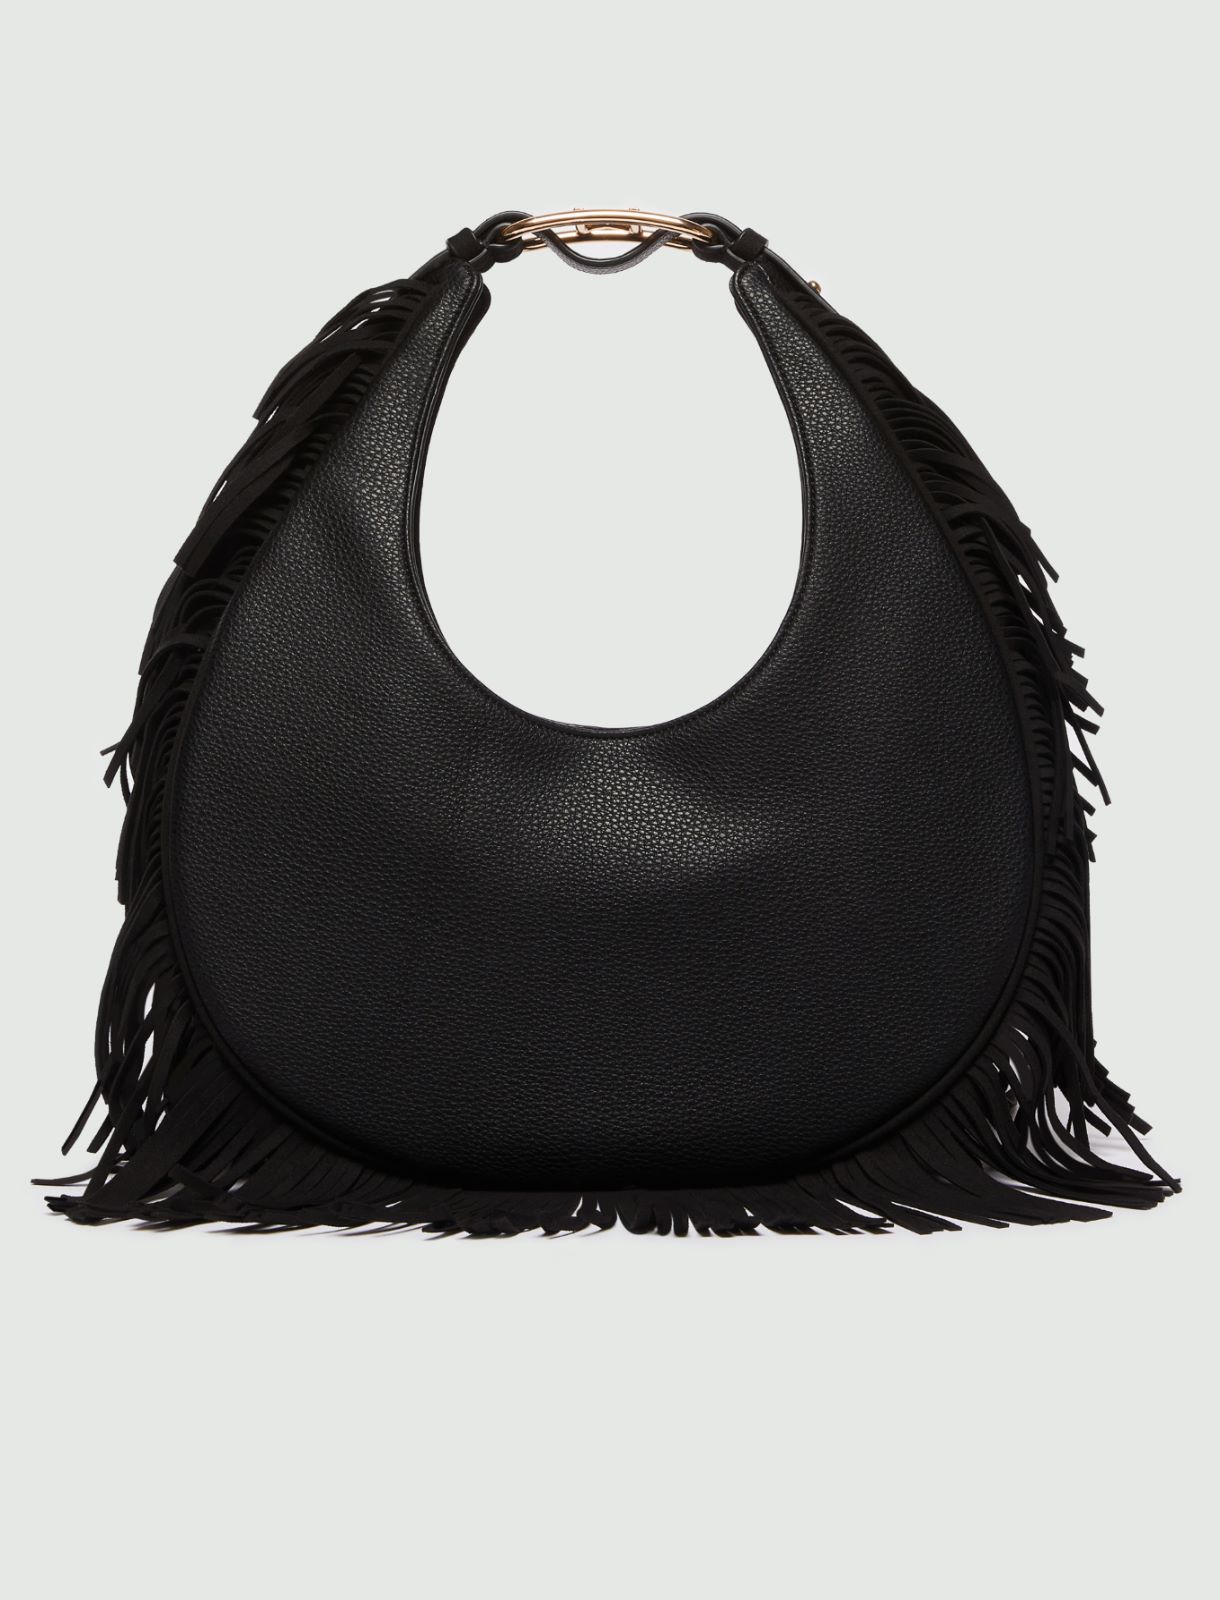 Medium bag with fringes, black | Marella